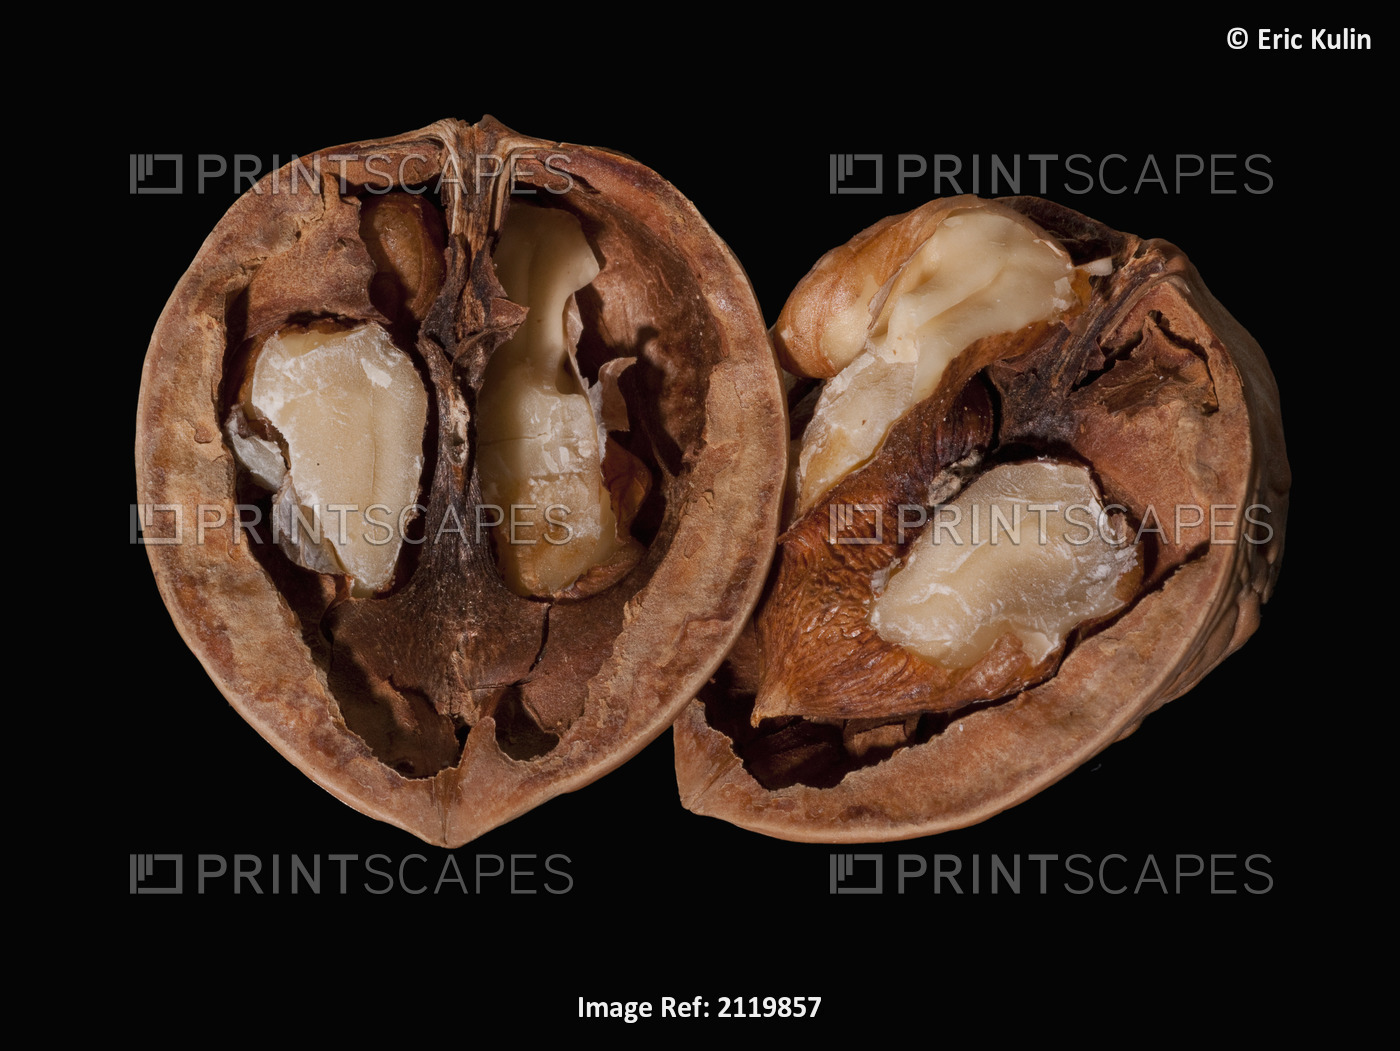 An open walnut on a black background